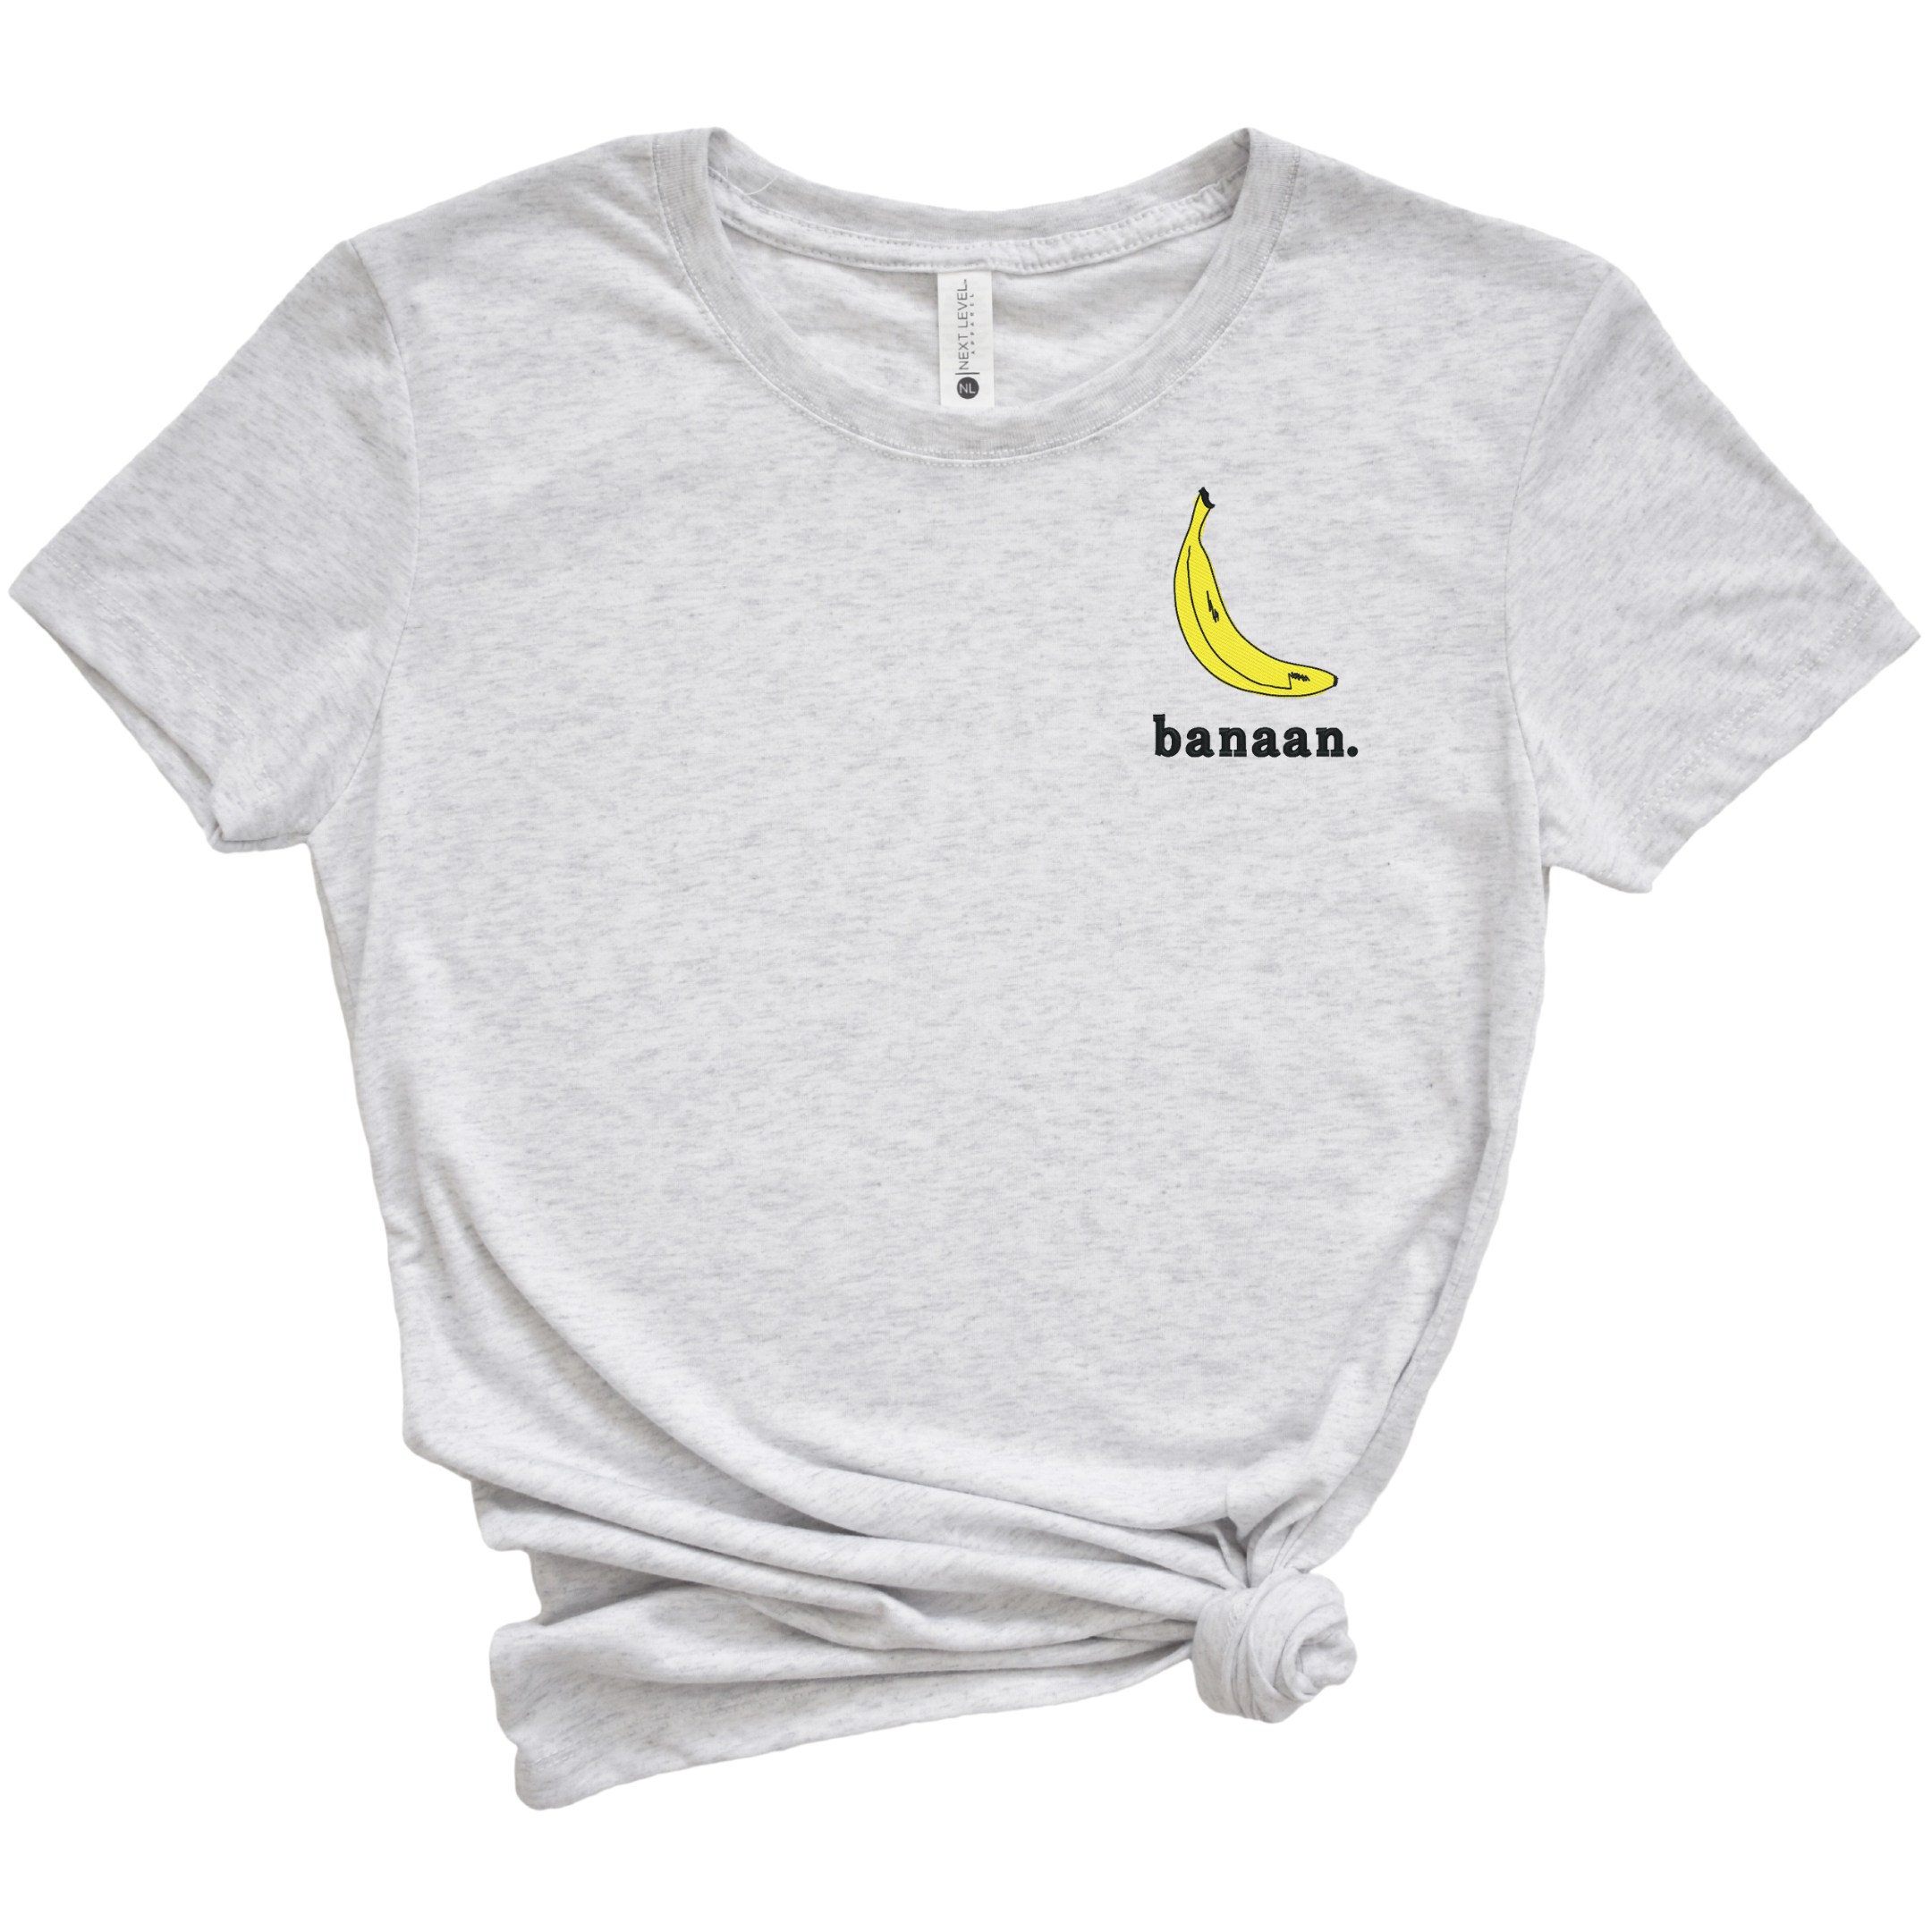 Banaan. Banana Embroidered Tee Shirt, Unisex